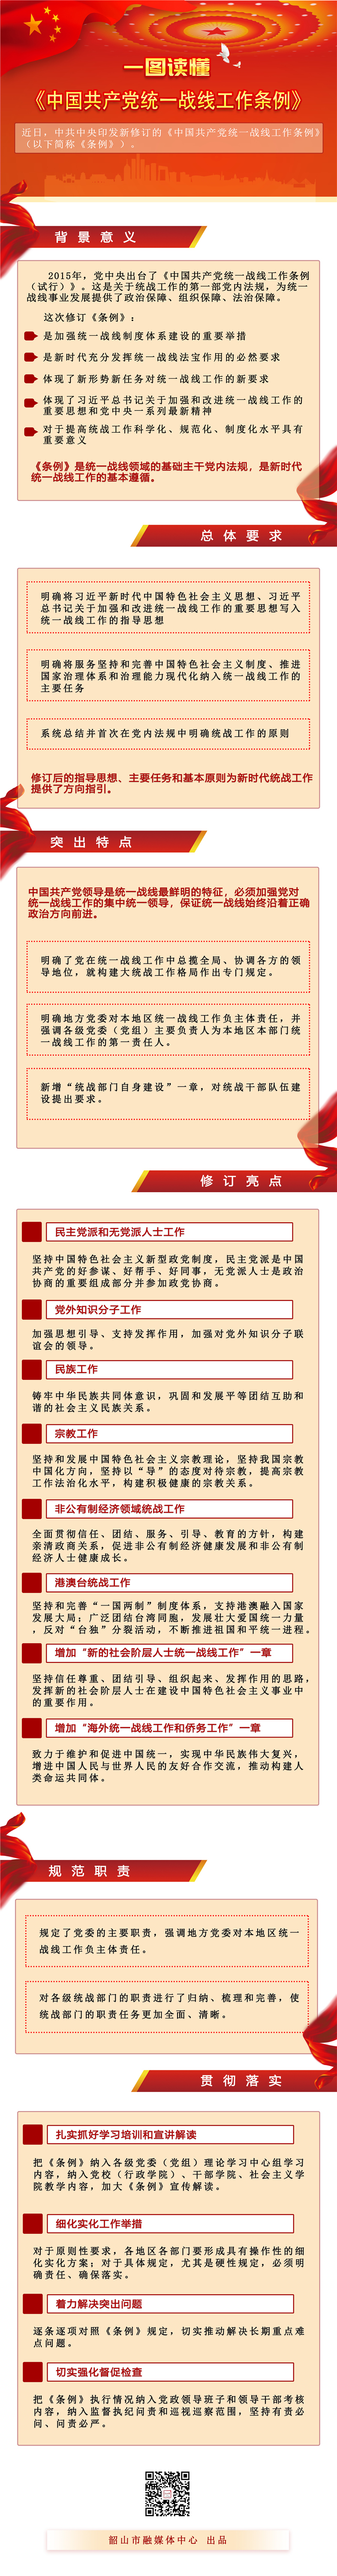 一图读懂《中国共产党统一战线工作条例》.jpg